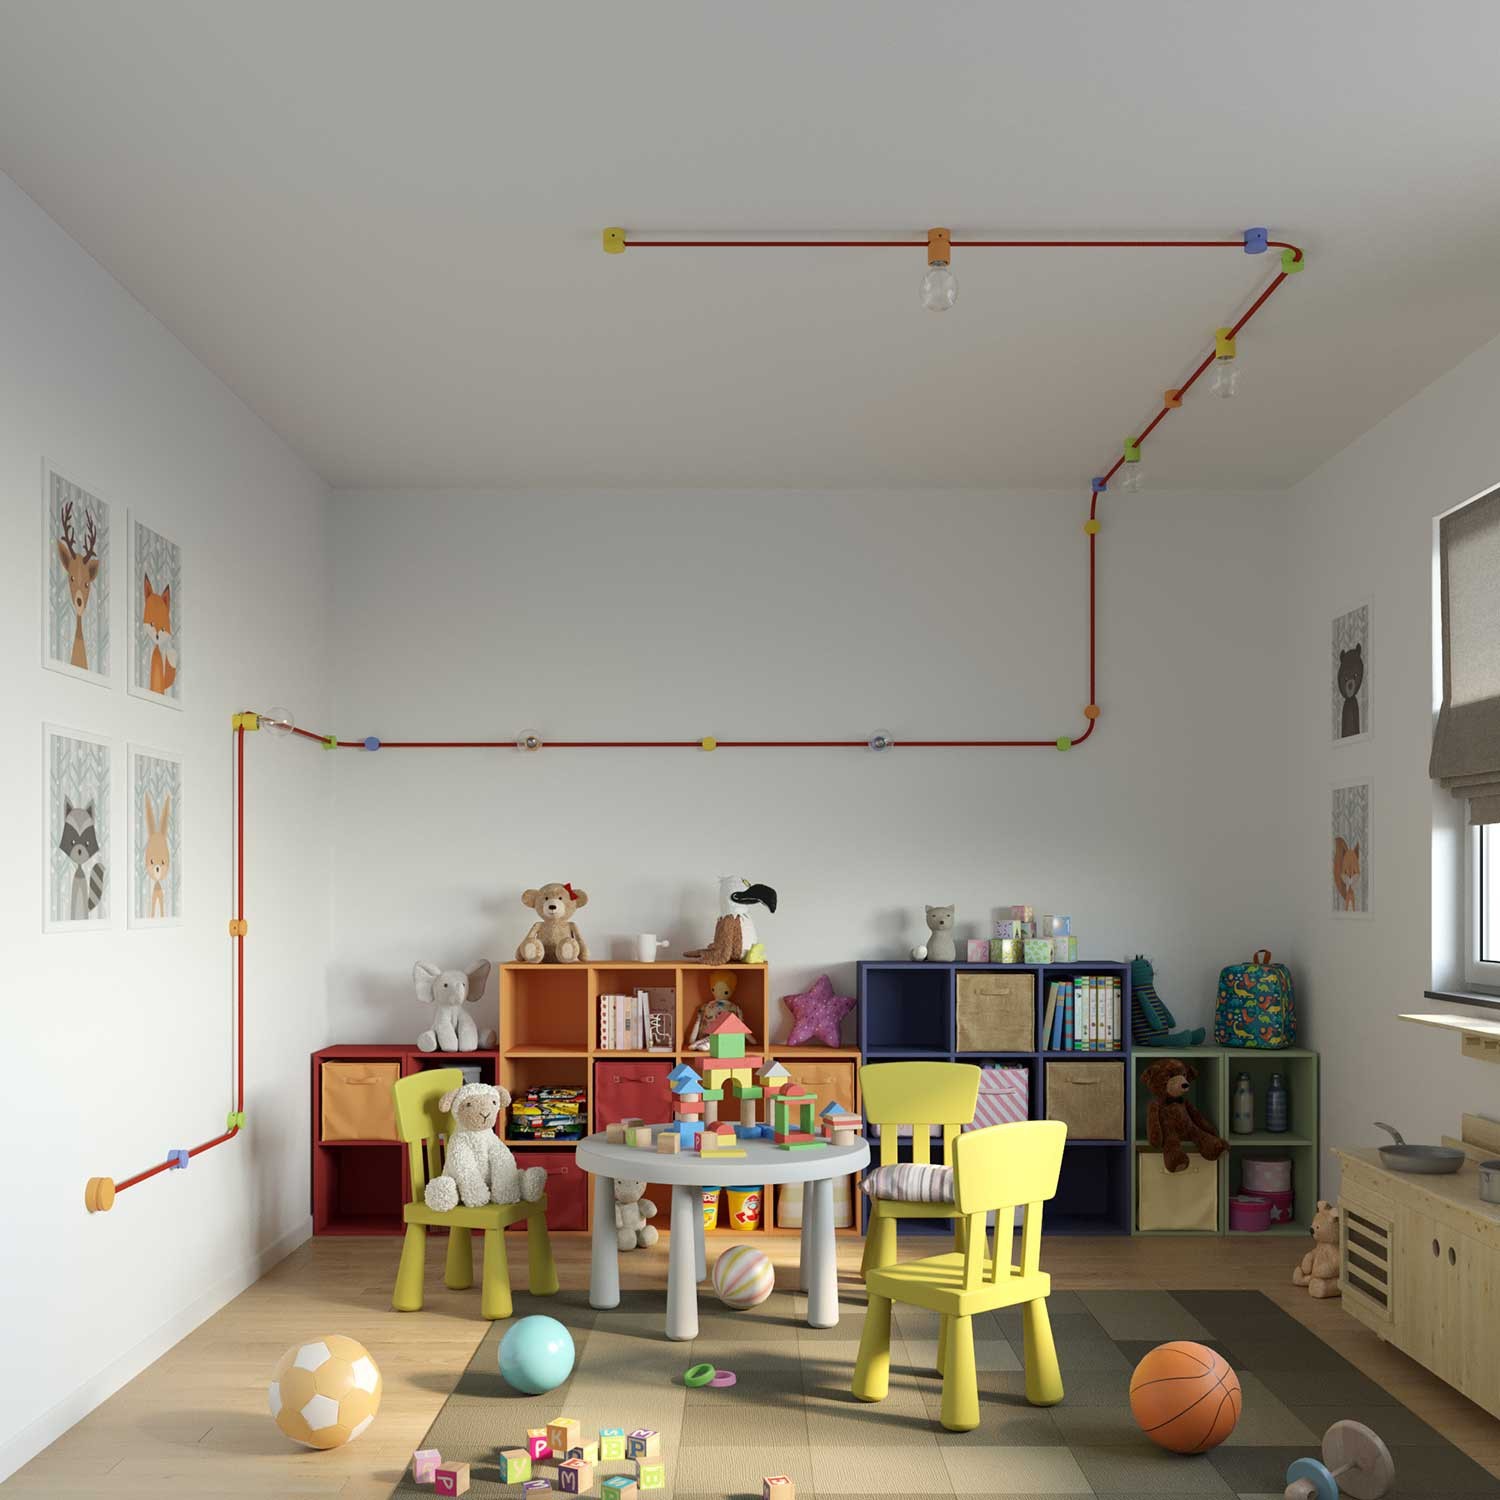 Fixation plafond en bois pour câbles de guirlandes lumineuses et Filé system. Fabriqué en Italie